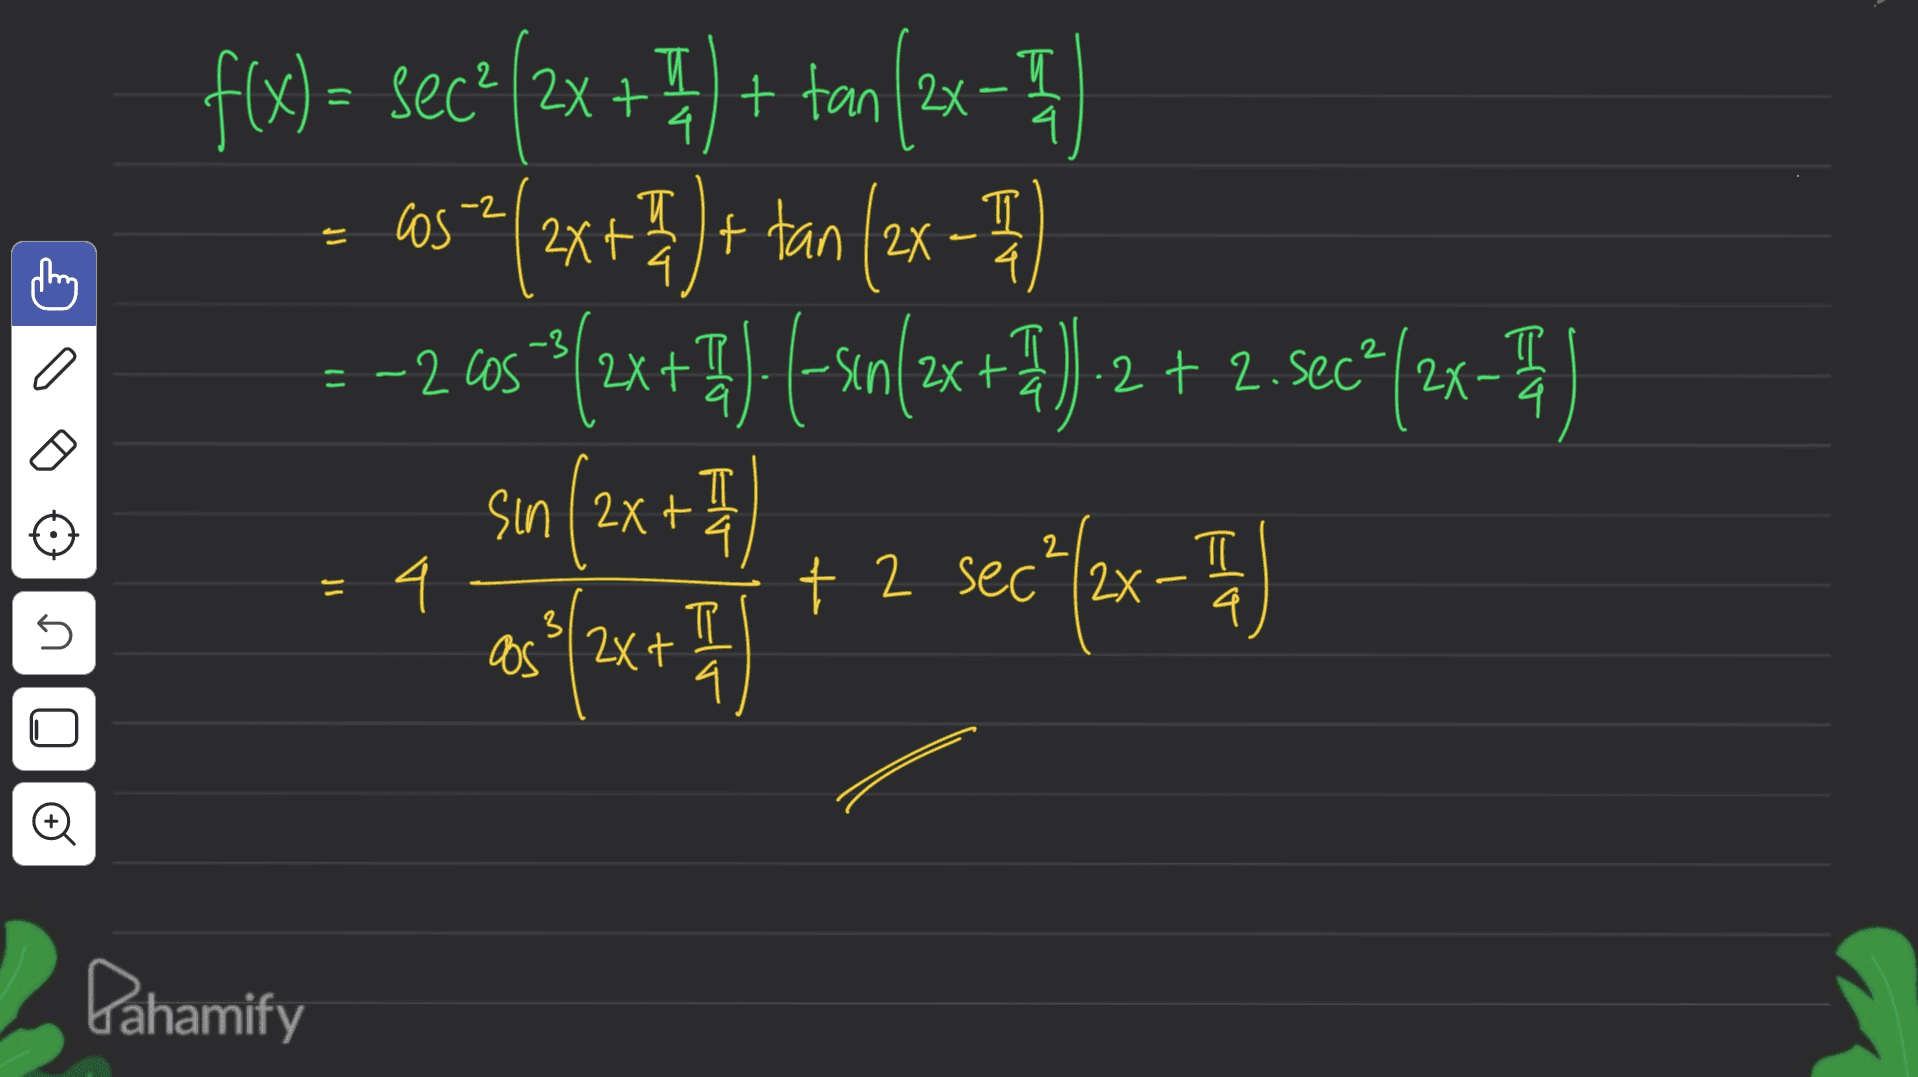 2 T 4. Es 4 cos + T 4 4. 2 f(x)= sec²/2x + 7) + tan(2x 57/3x + 7 ) + tan (2x - 71 77 ---2603°(2x + ) (-sen(2x+3) 2 + 2. Sec*(2x-) sin (2x + 71 as {2x + 7 ) + 2 secºlex - - 4 I I cos 2XI .2+2 T 4 a 4- π q n 3 4. O 0 Pahamify 